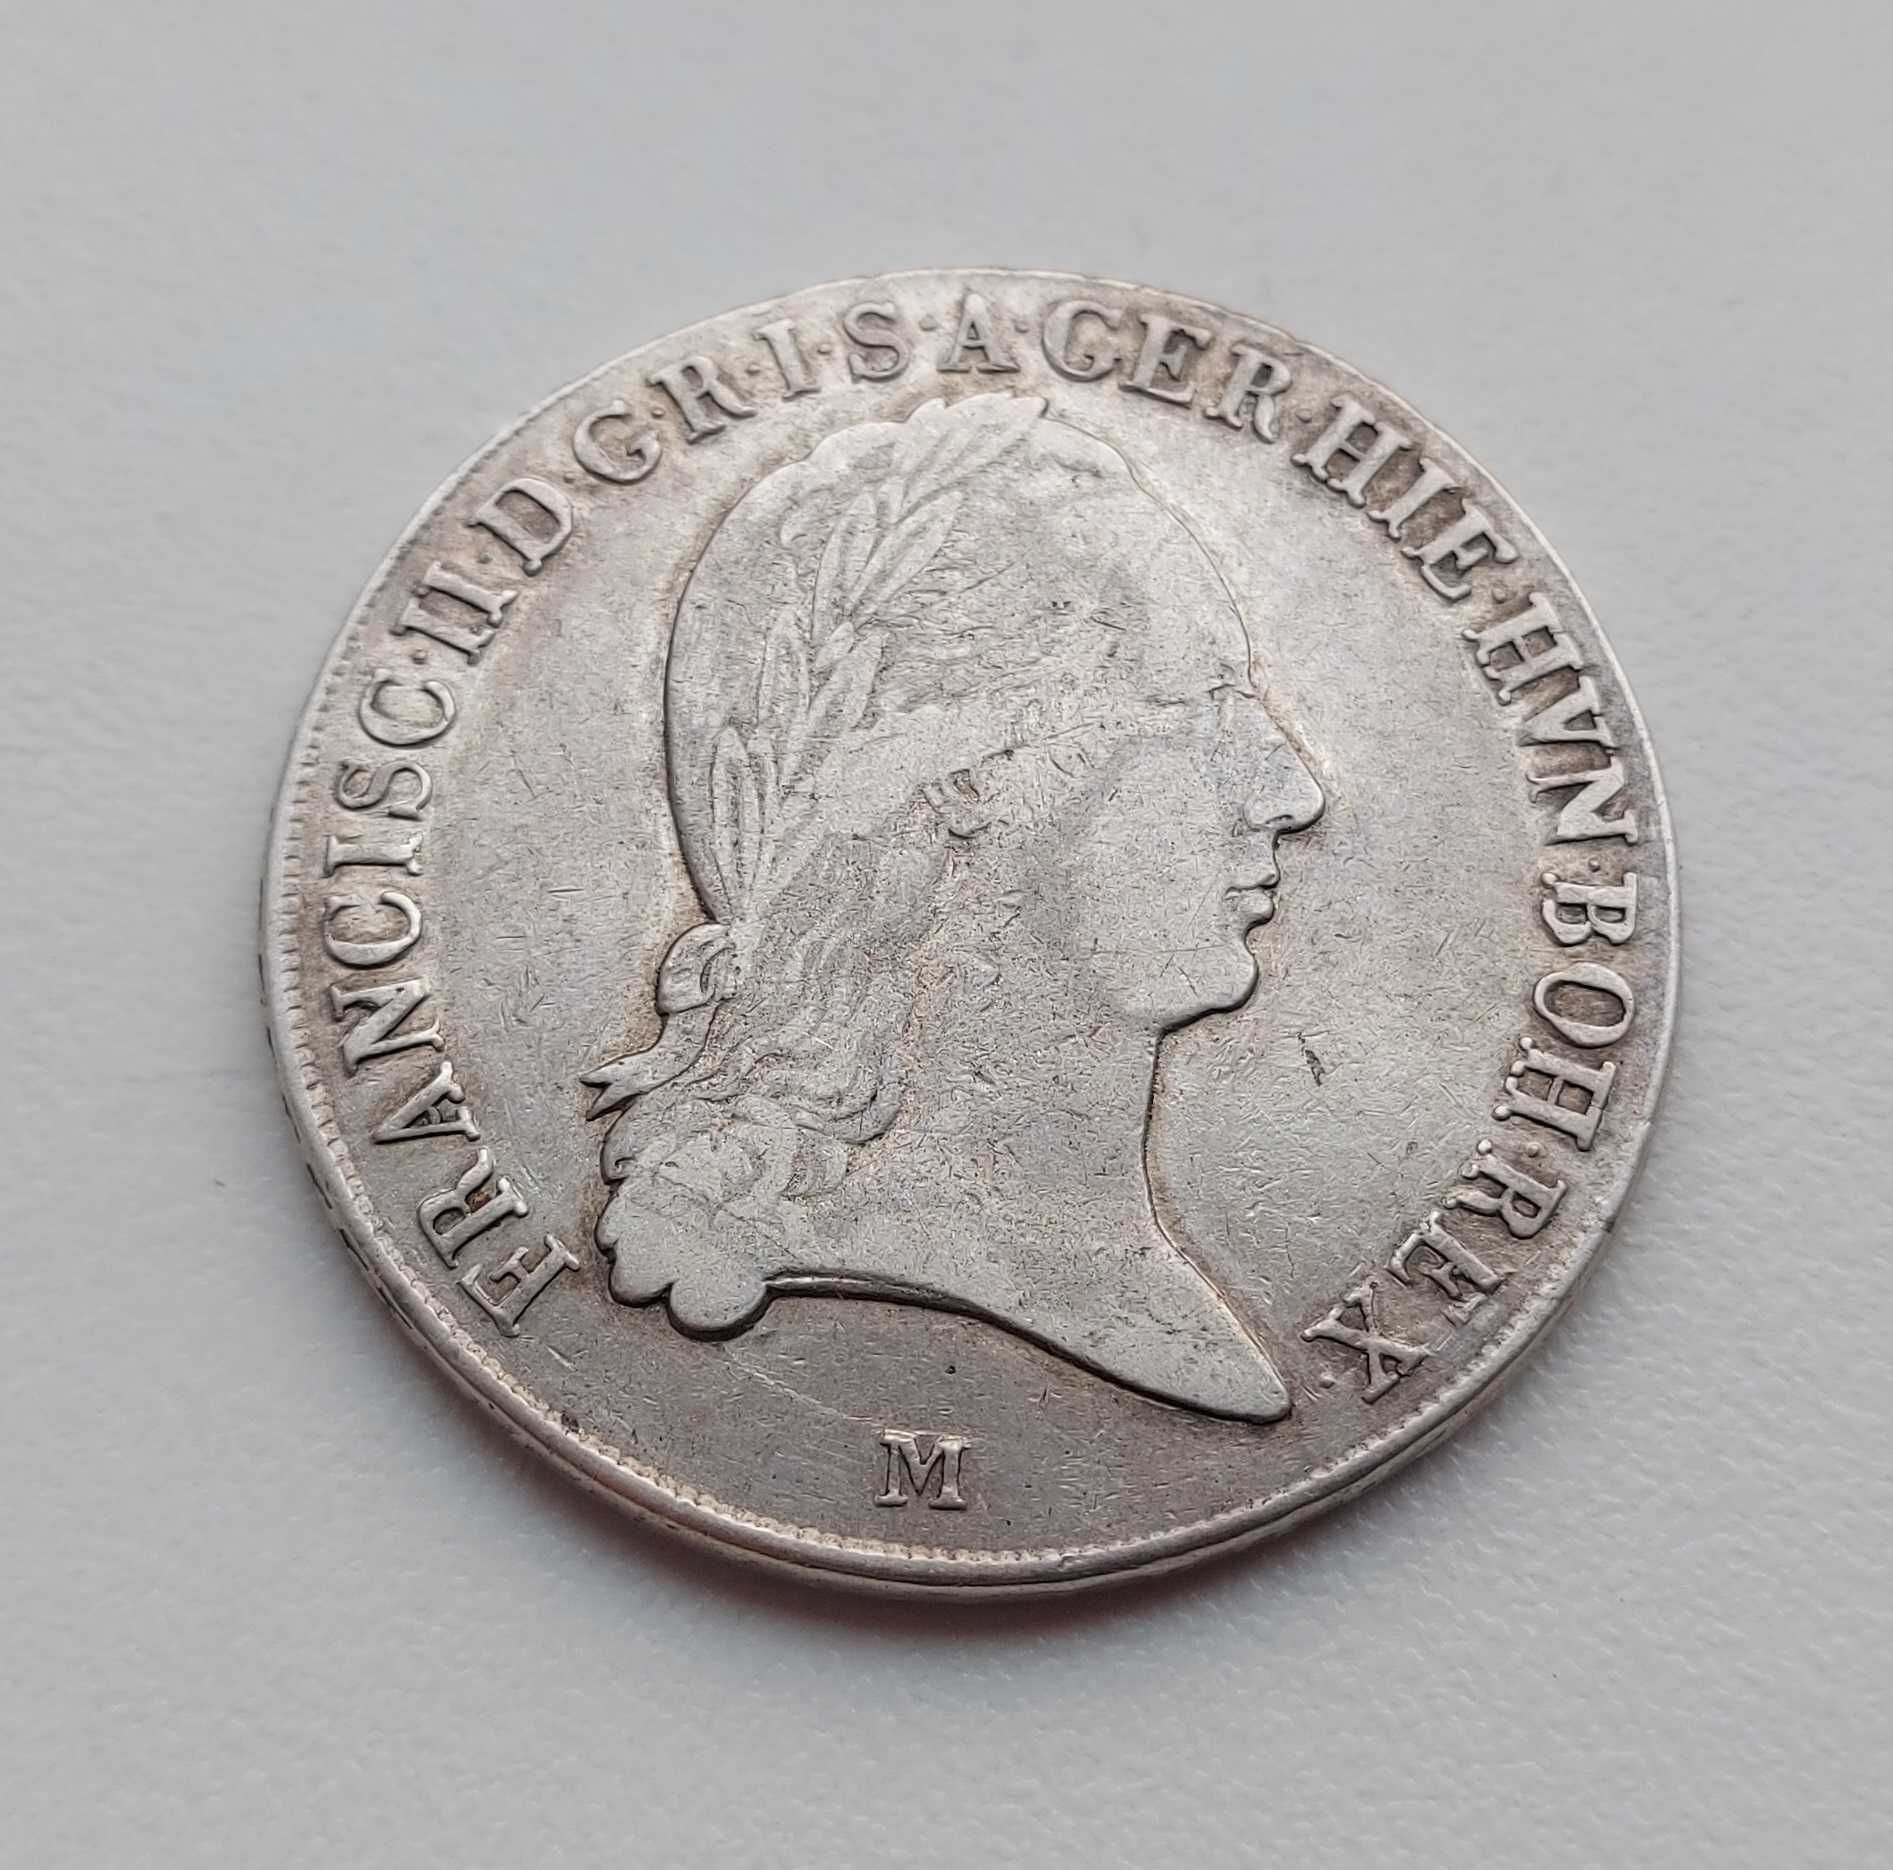 Мілан 1 кроненталер 1796 р. Міланське Герцогство срібло